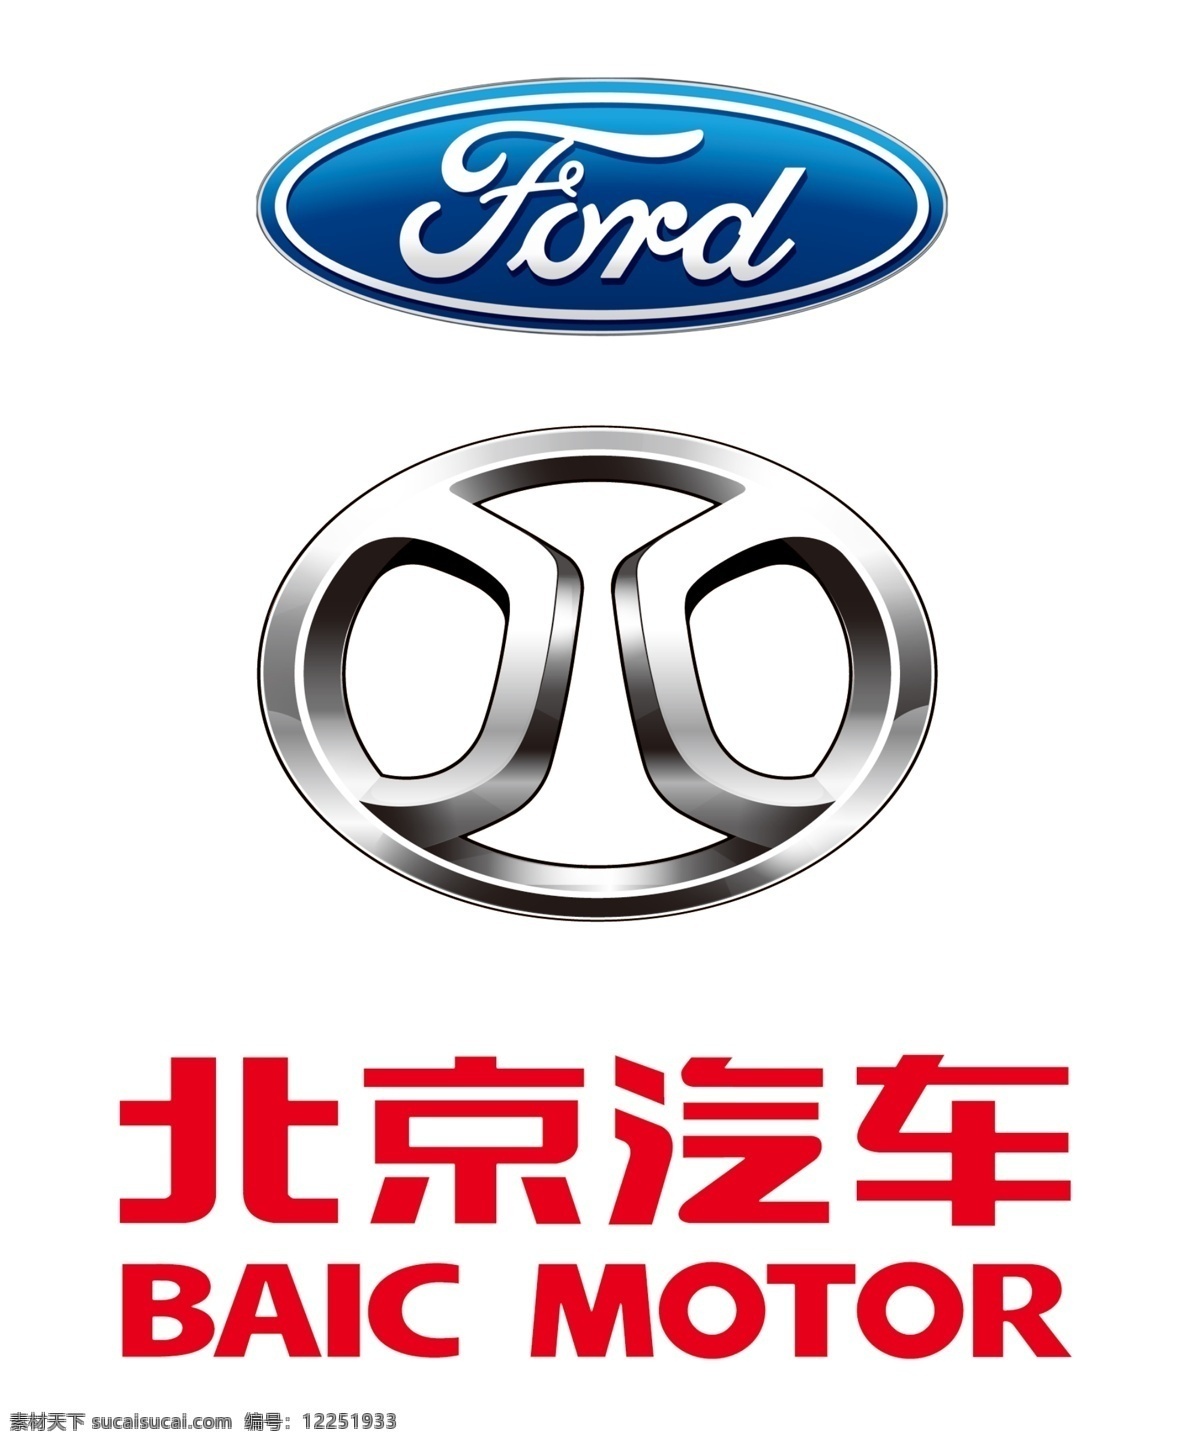 北京汽车标志 福特标志 汽车标志 汽车logo logo 标志 汽车标志素材 北京汽车 福特 汽车 福特汽车标志 福特汽车 ford dord标志